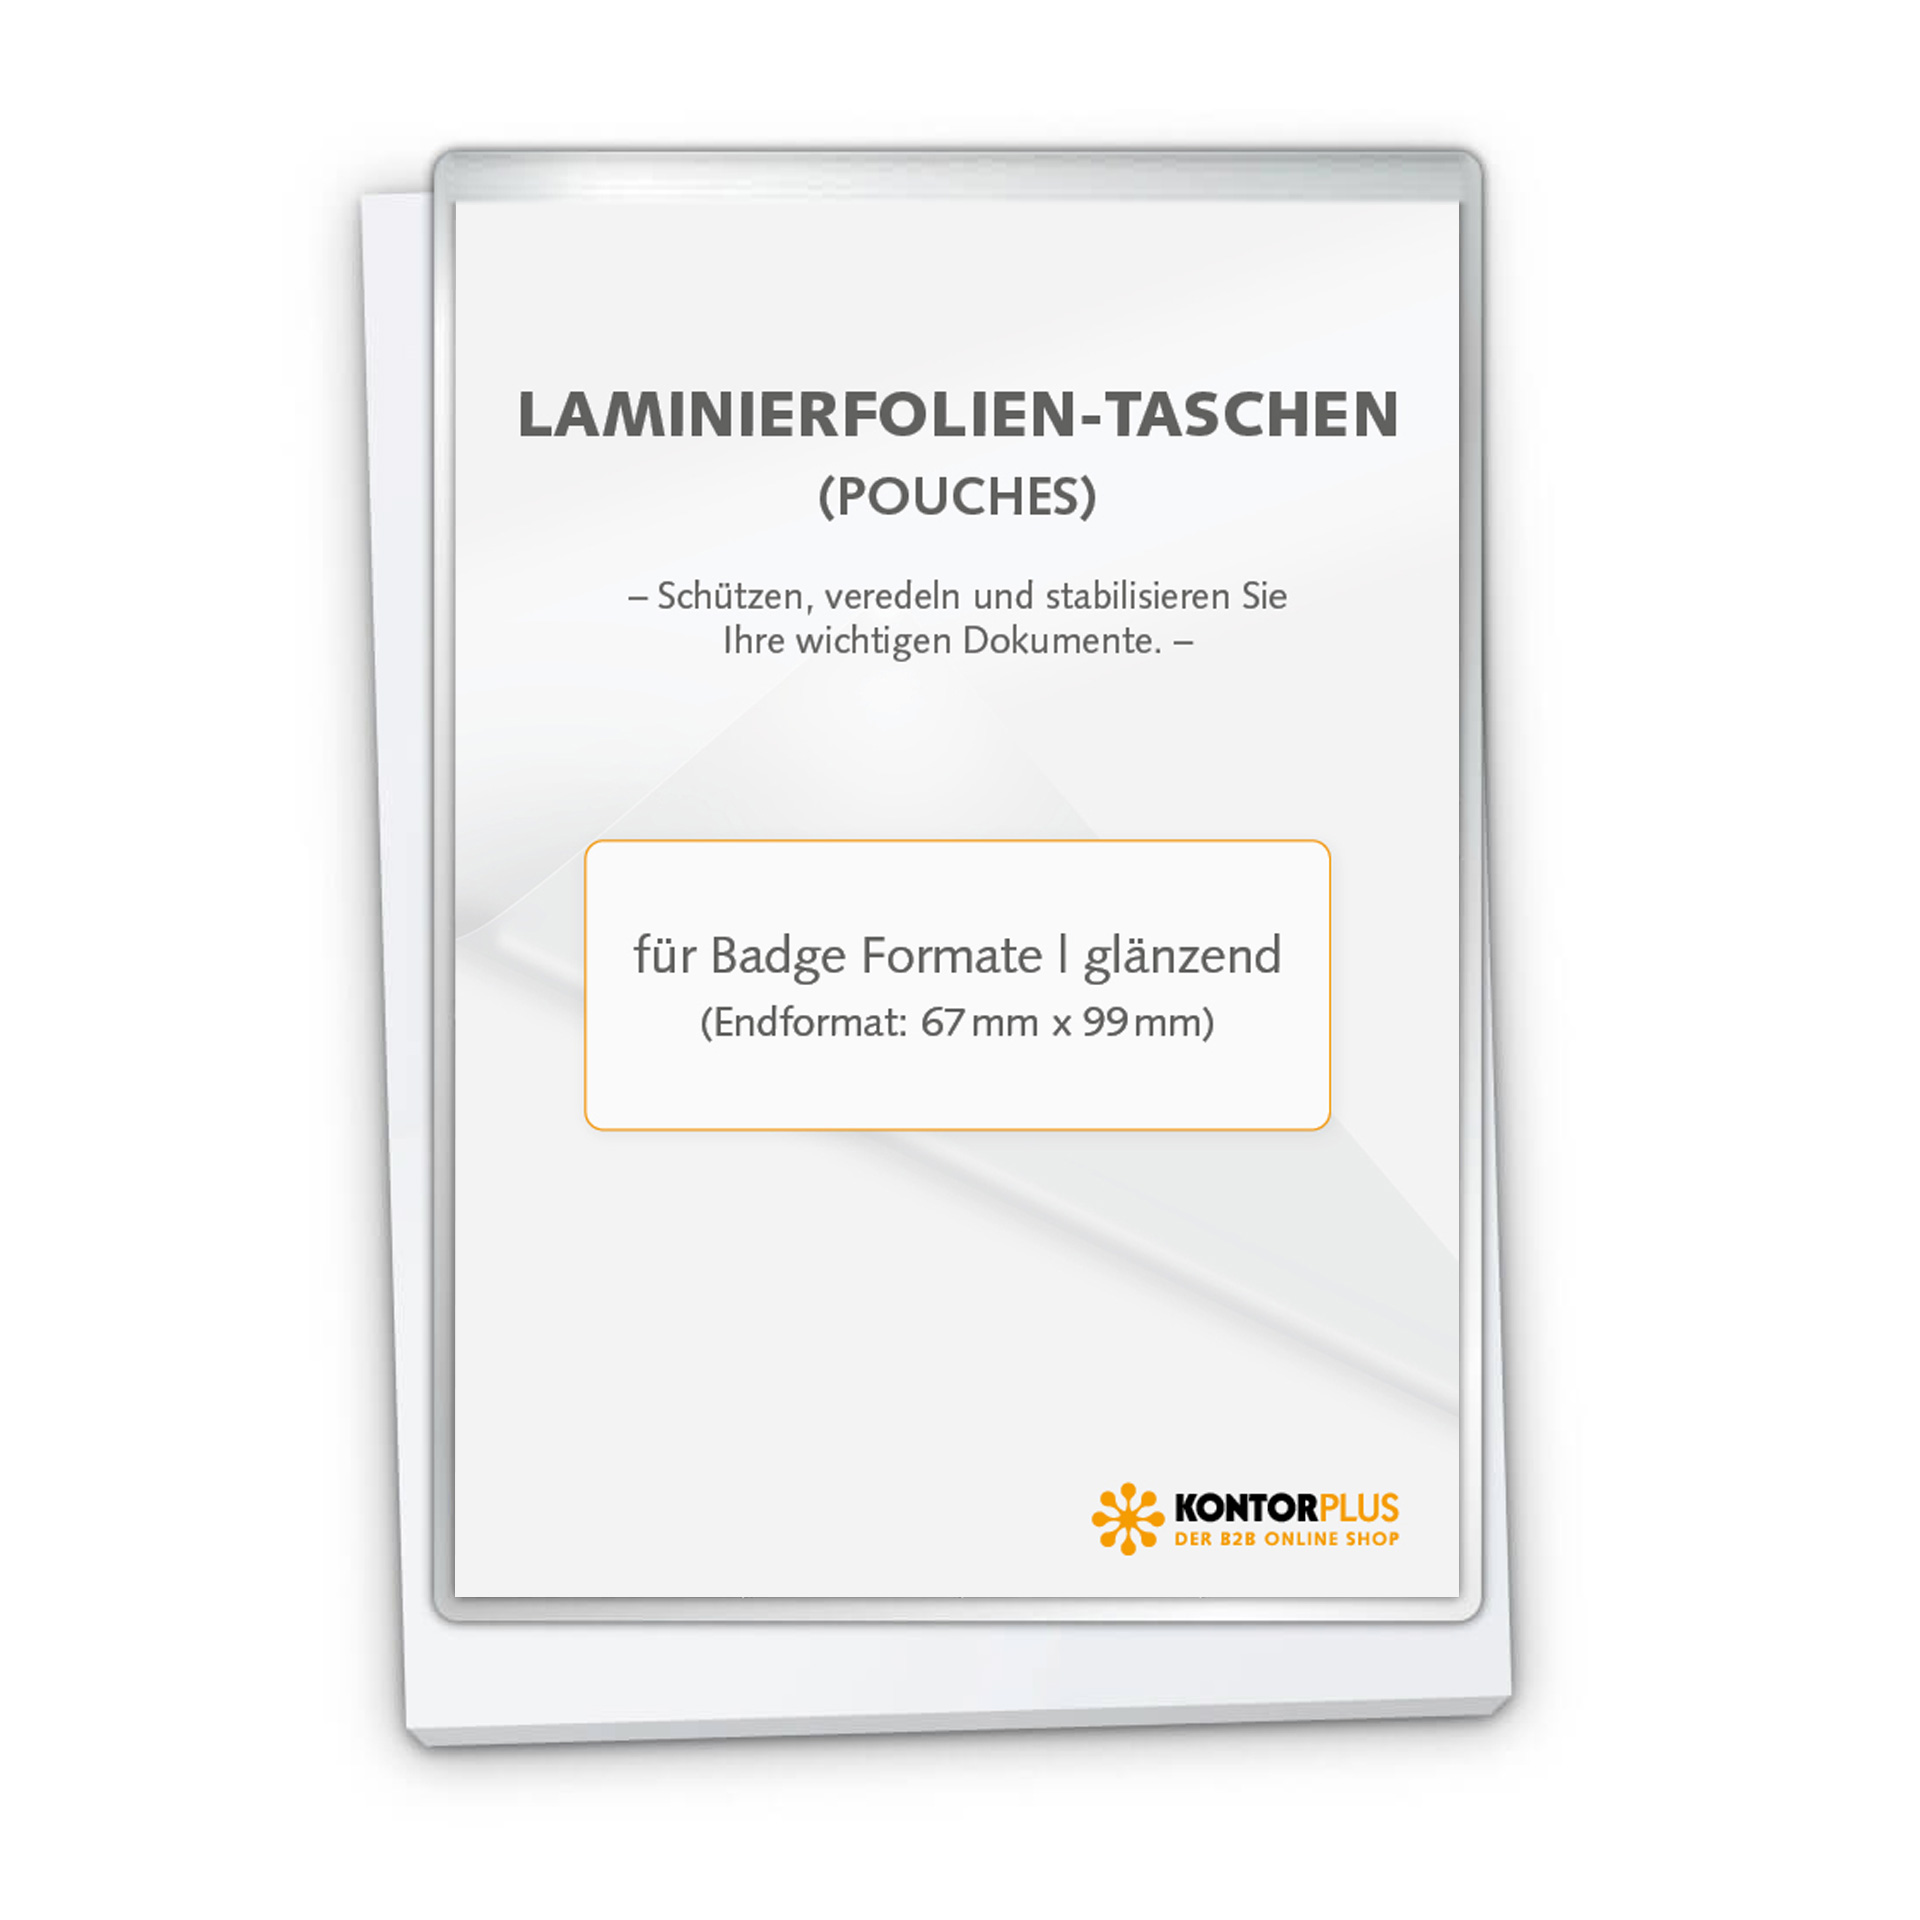 Laminierfolien CardPouch für Badge Formate | 2x 180 Mic